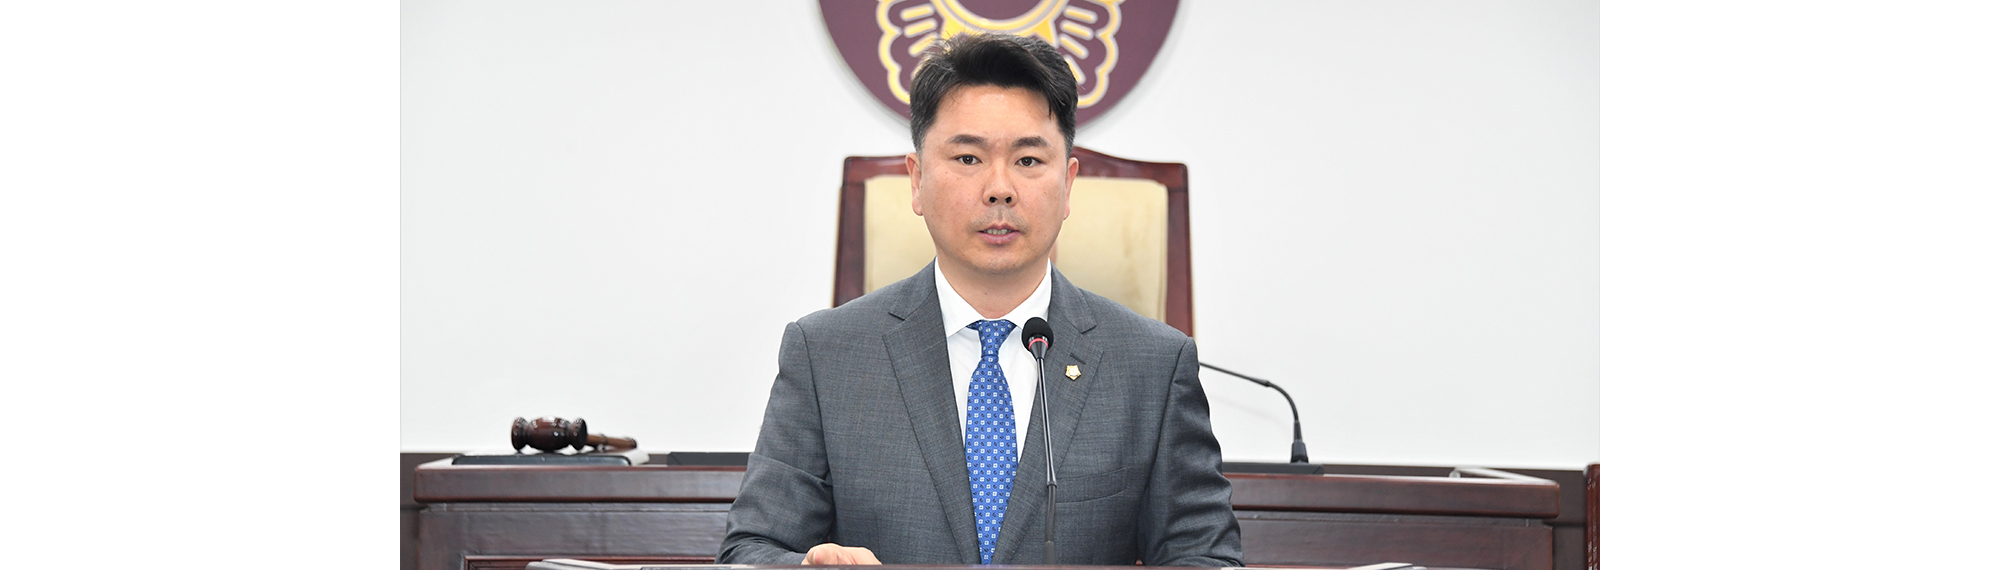 김운호 의원